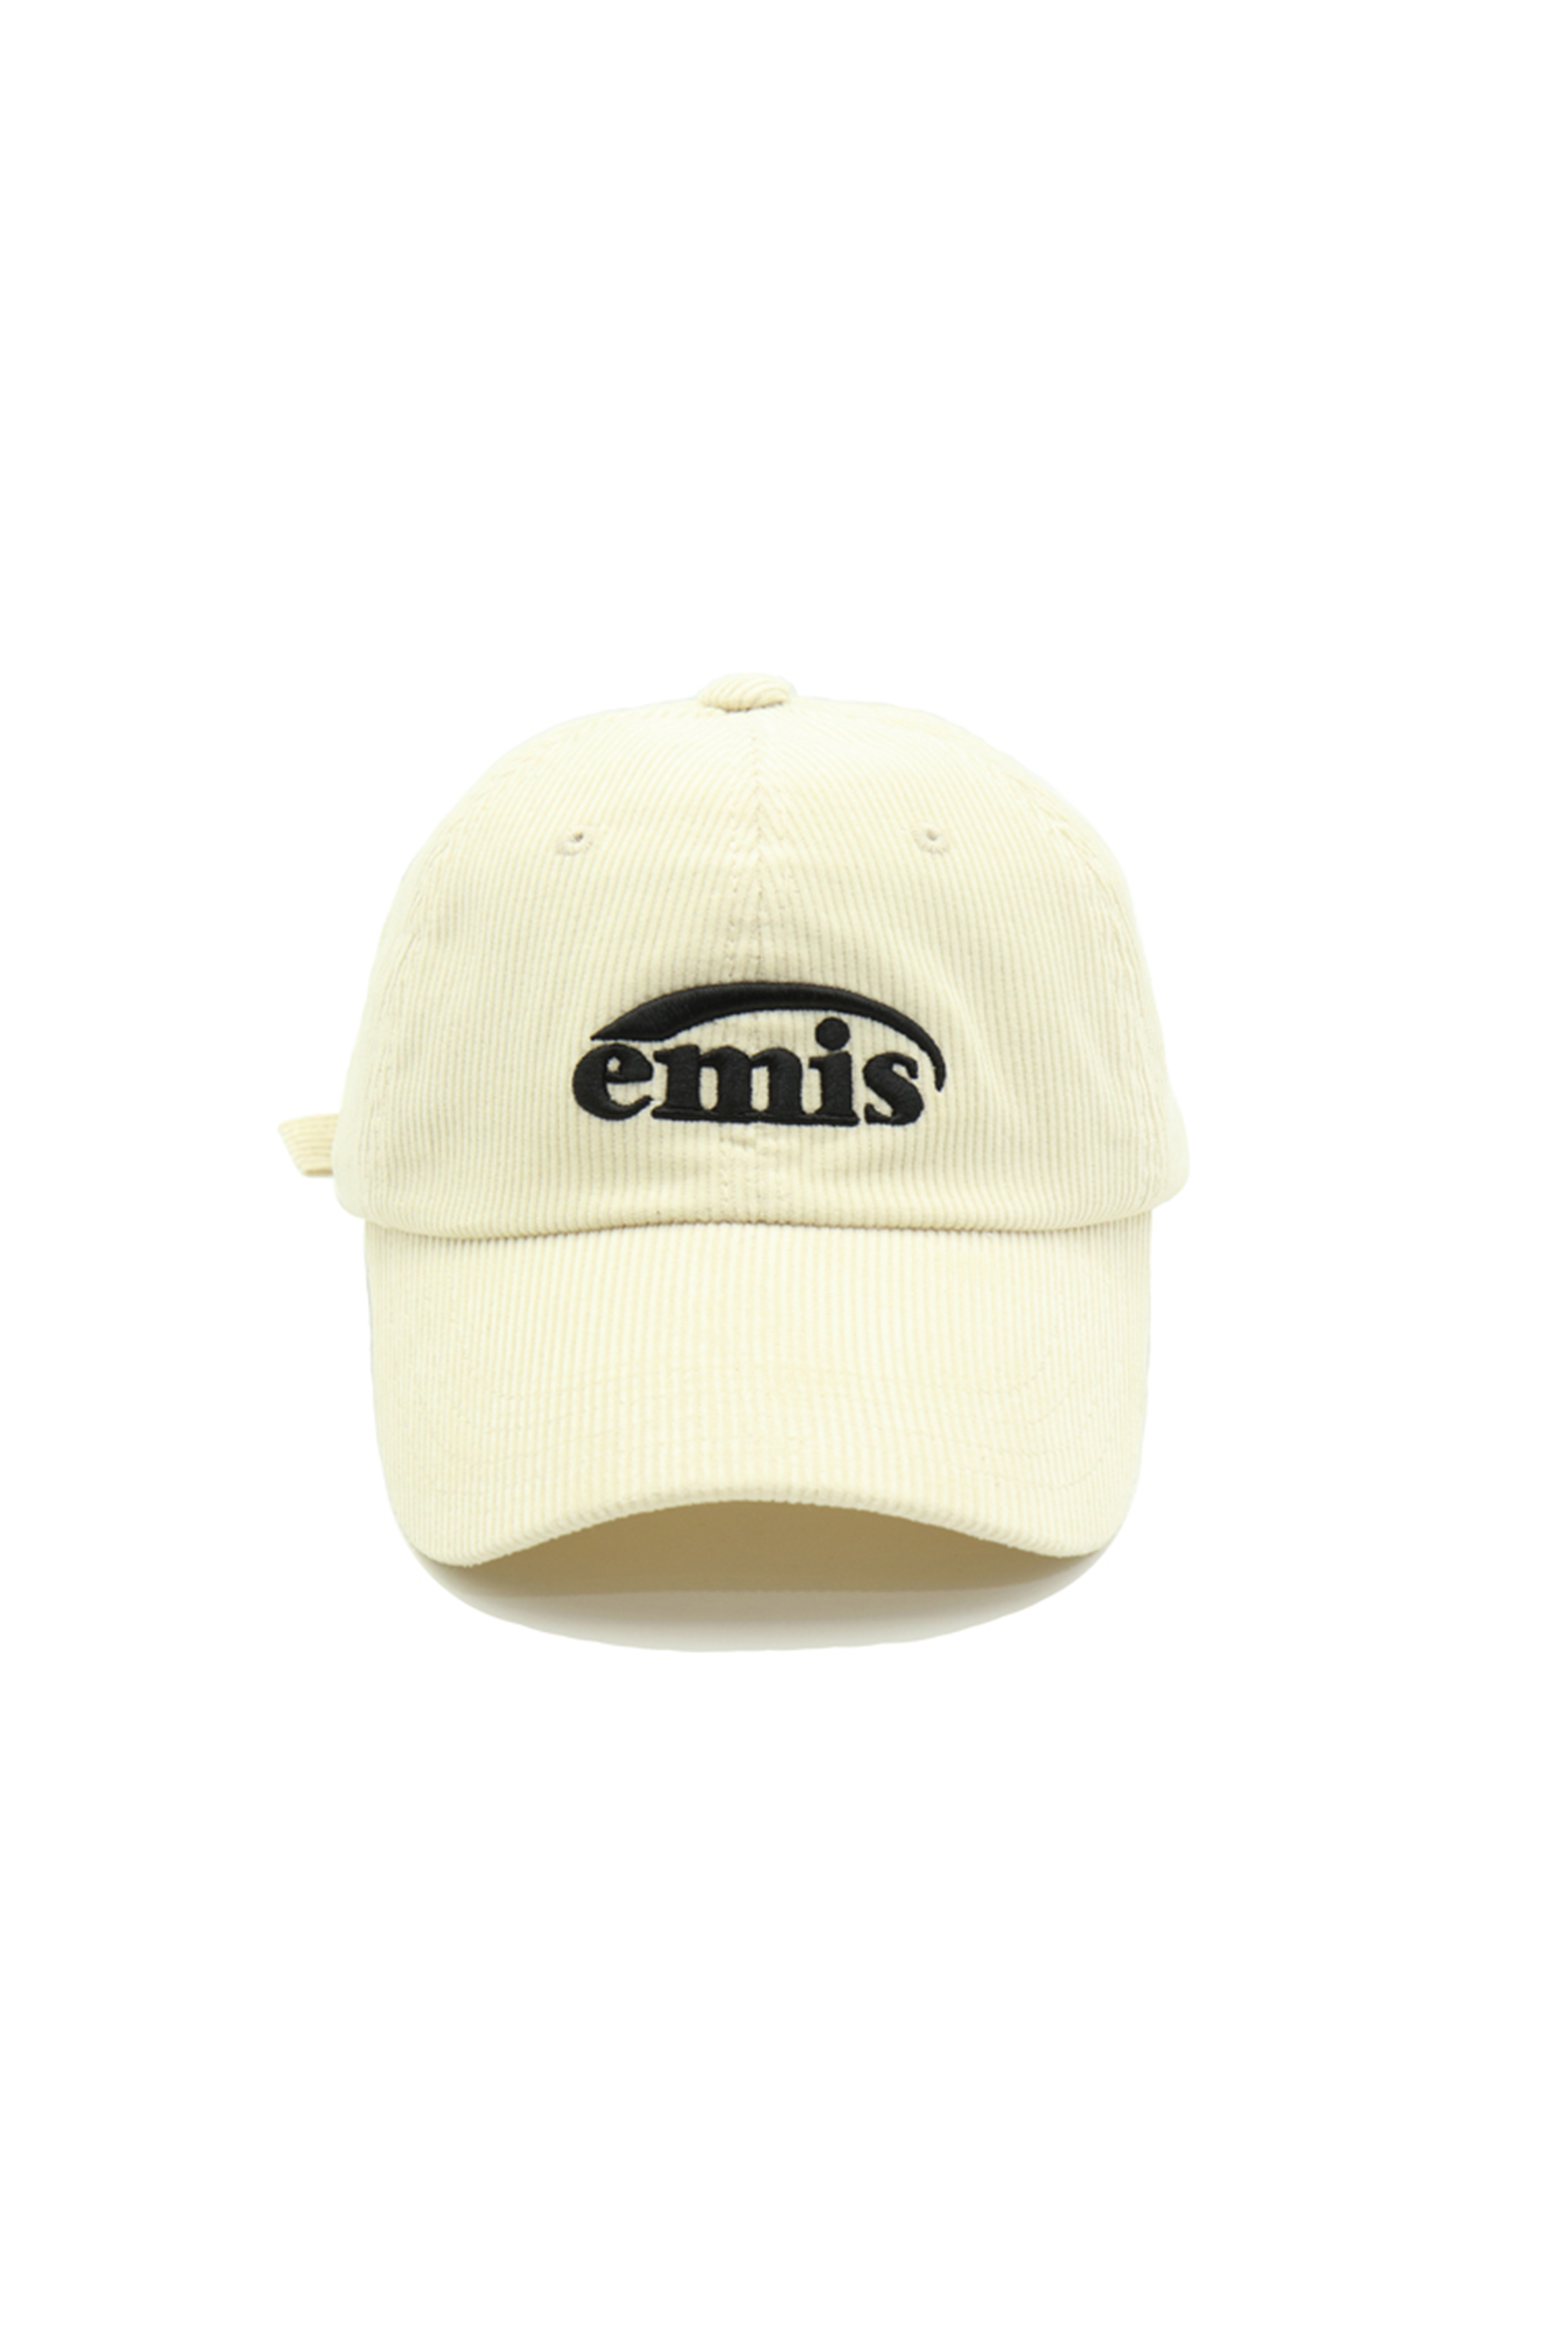 NEW LOGO CORDUROY EMIS CAP-CREAM